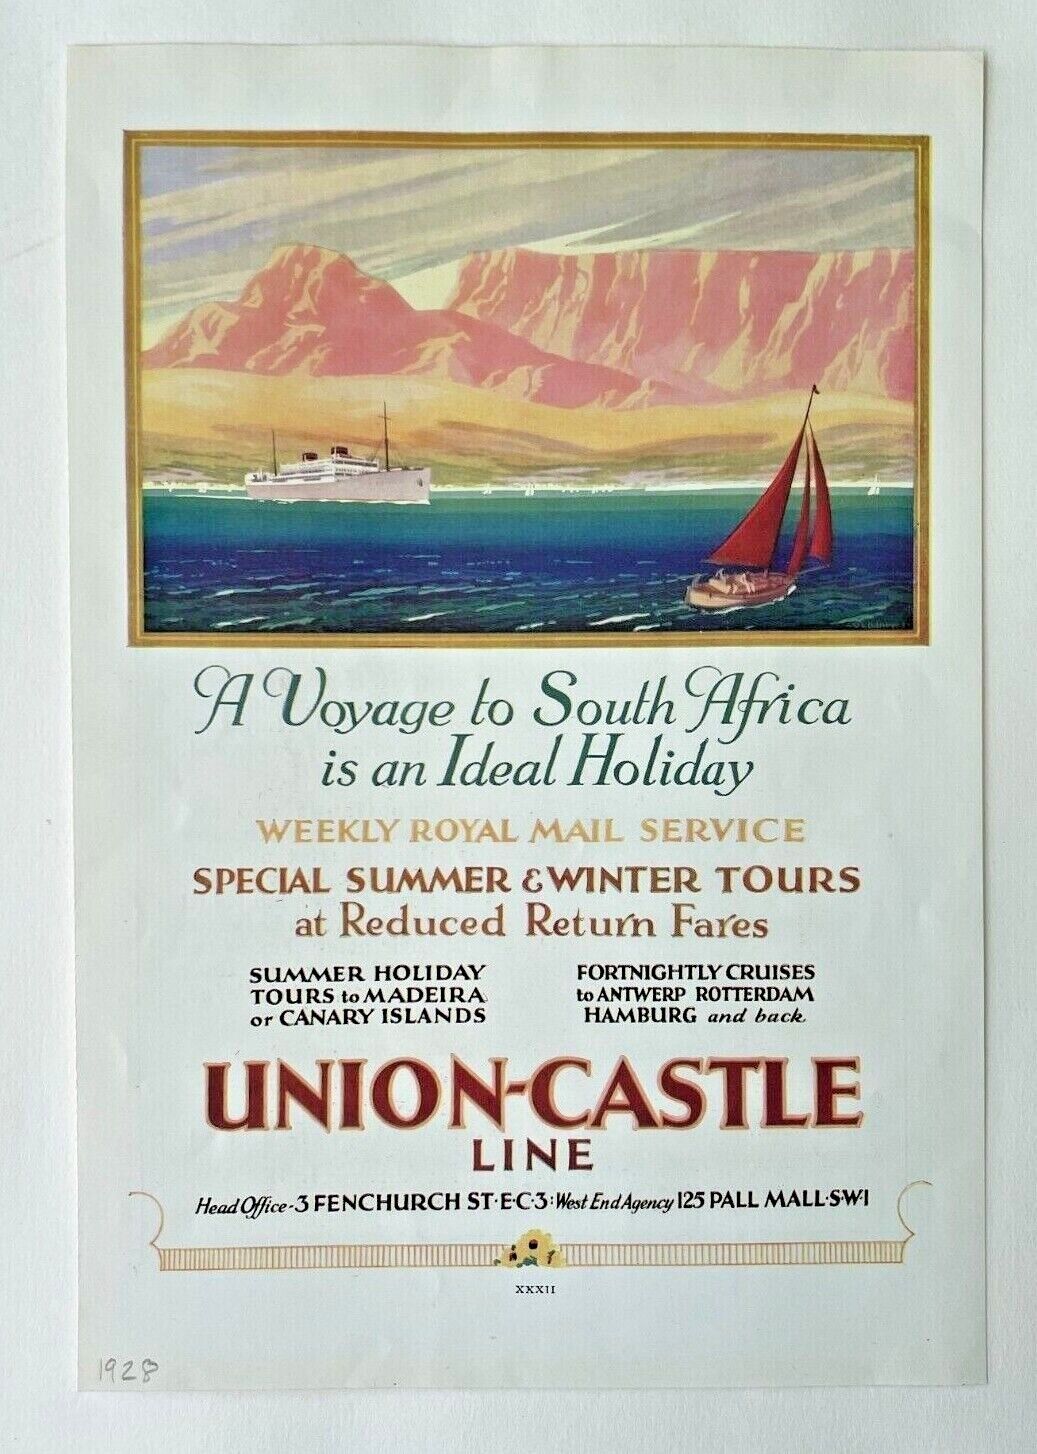 1928  Union-Castle Line  South Africa Tours Steamship Supplement Advertisement 